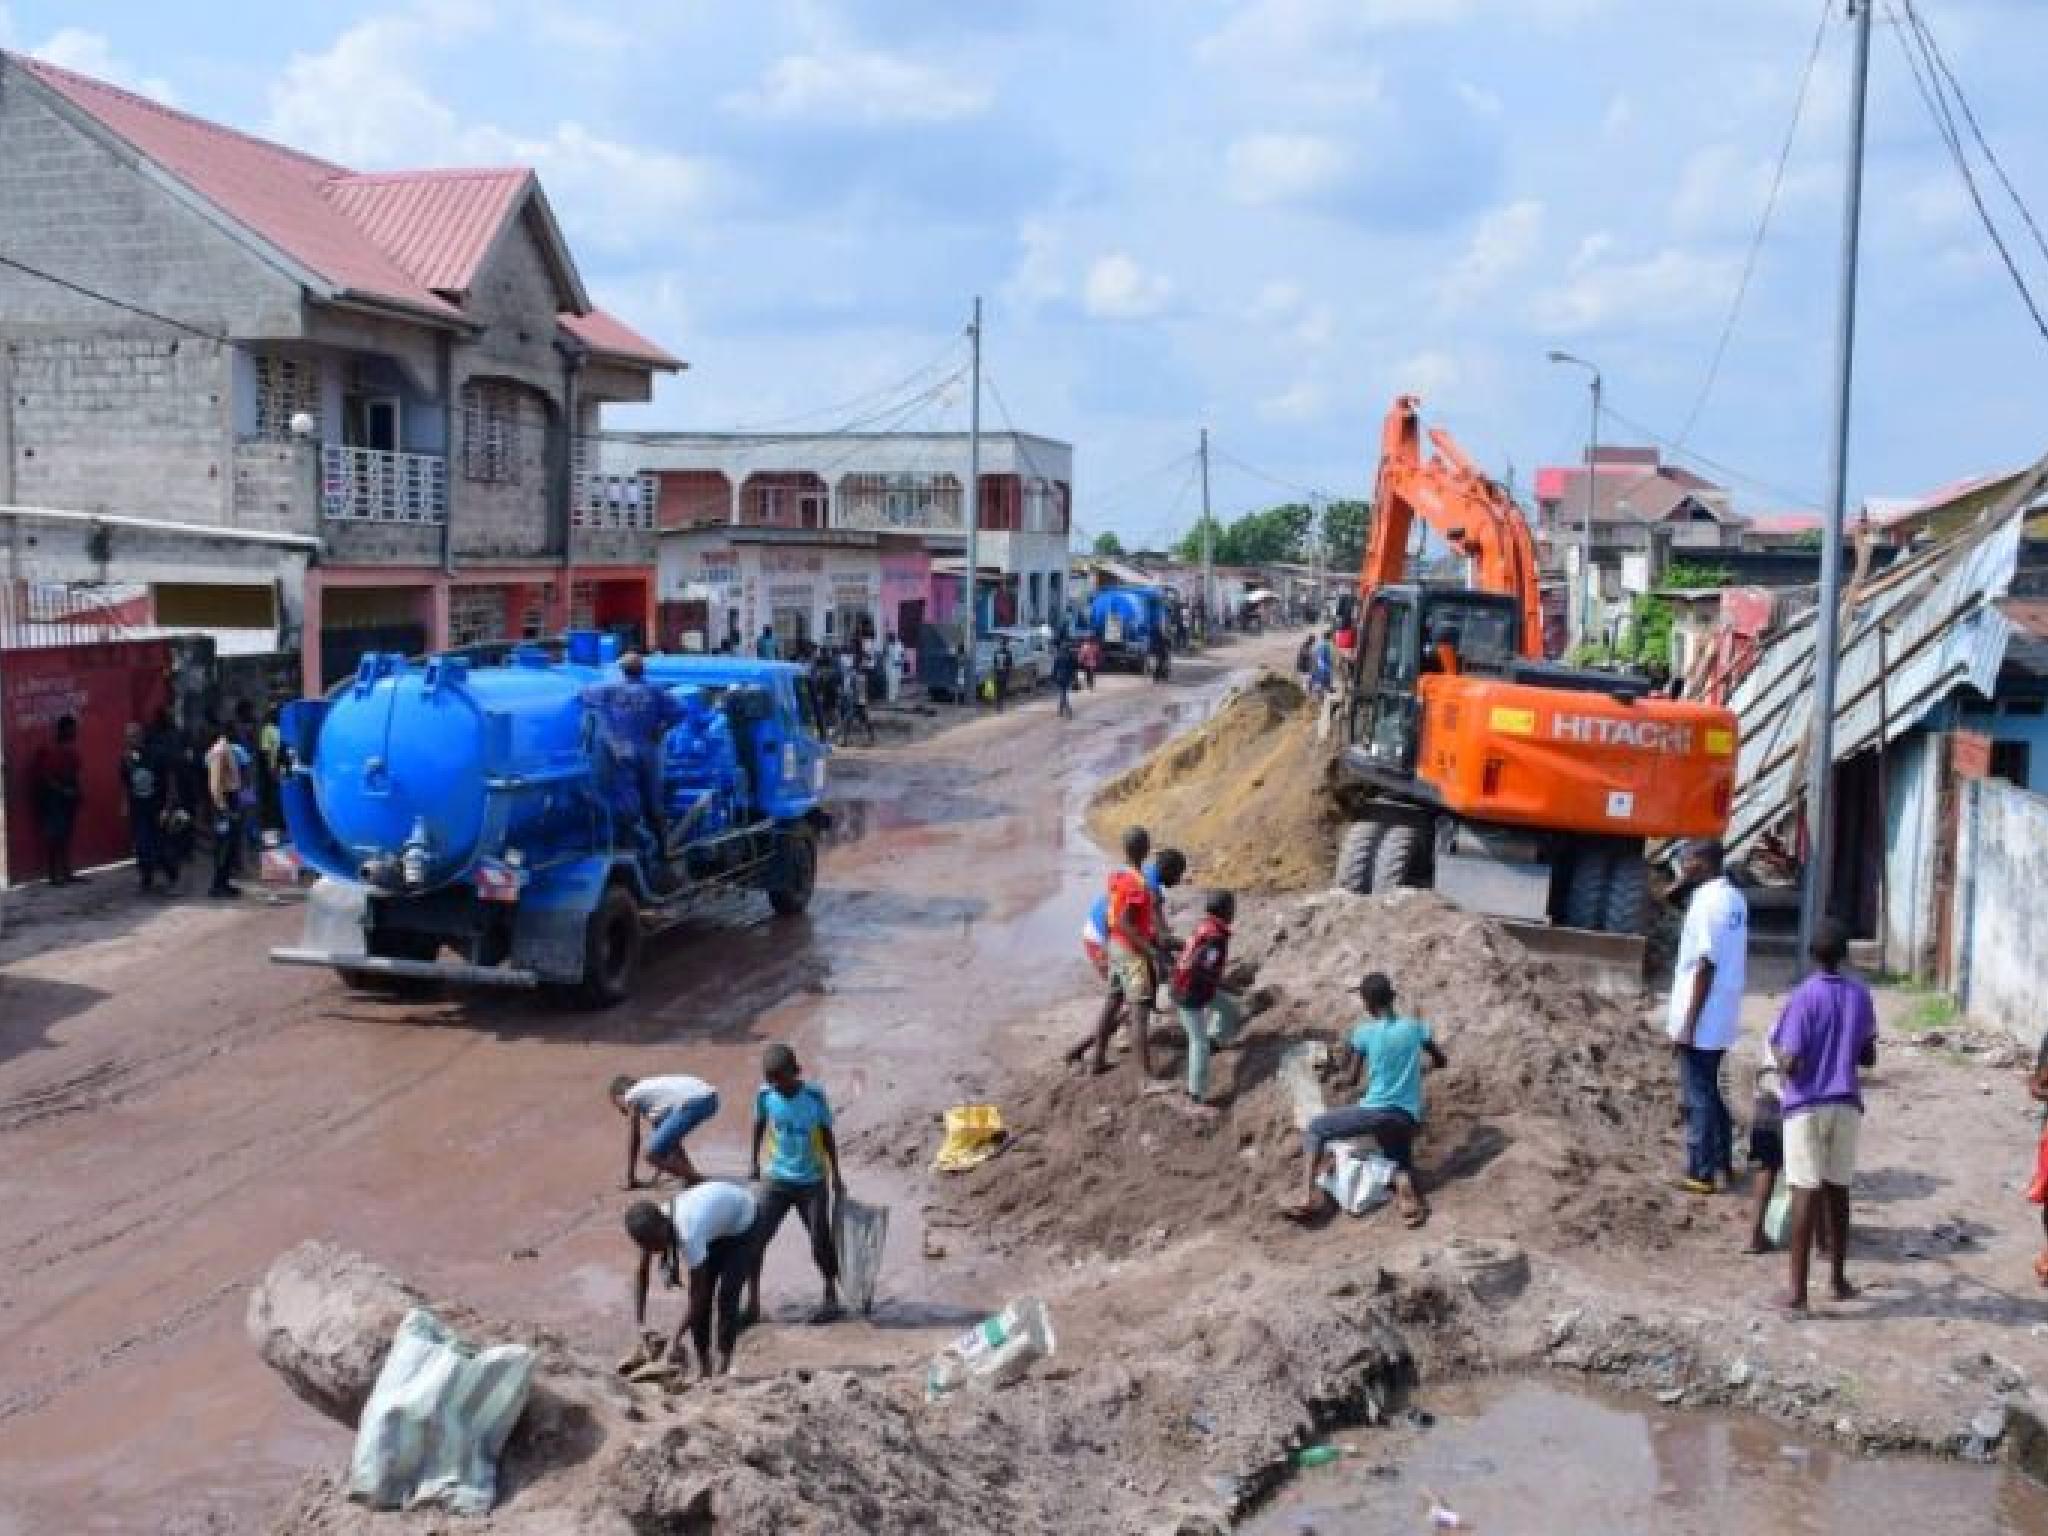 La route Cecomaf dans la commune de N'djili en train d'être réhabilitée par l'OVD